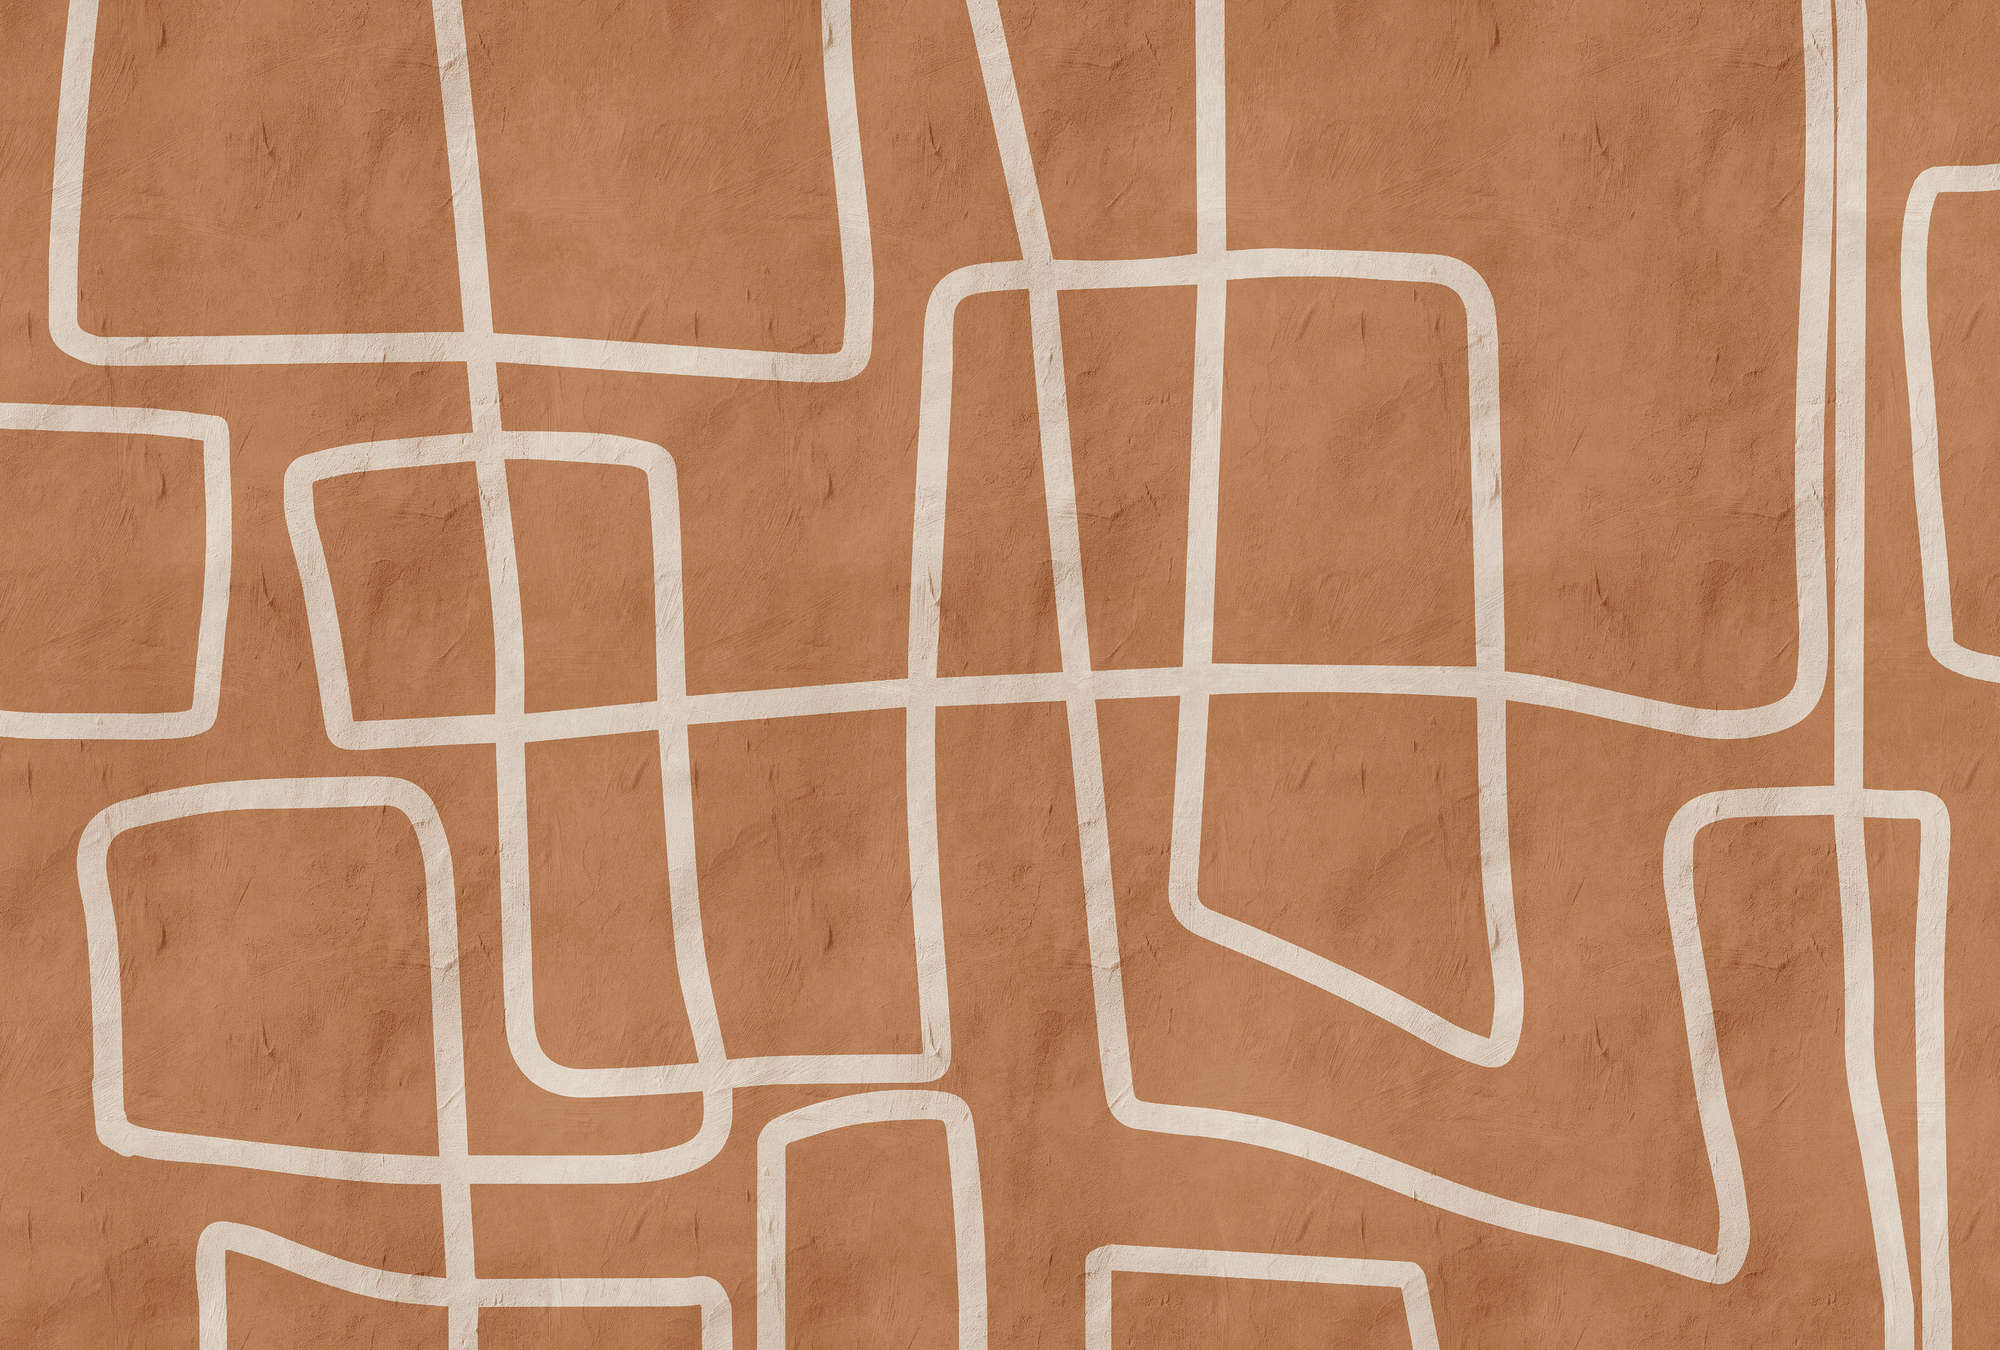             Serengeti 2 - Mur d'argile Papier peint Terracota avec motif de lignes ethniques
        